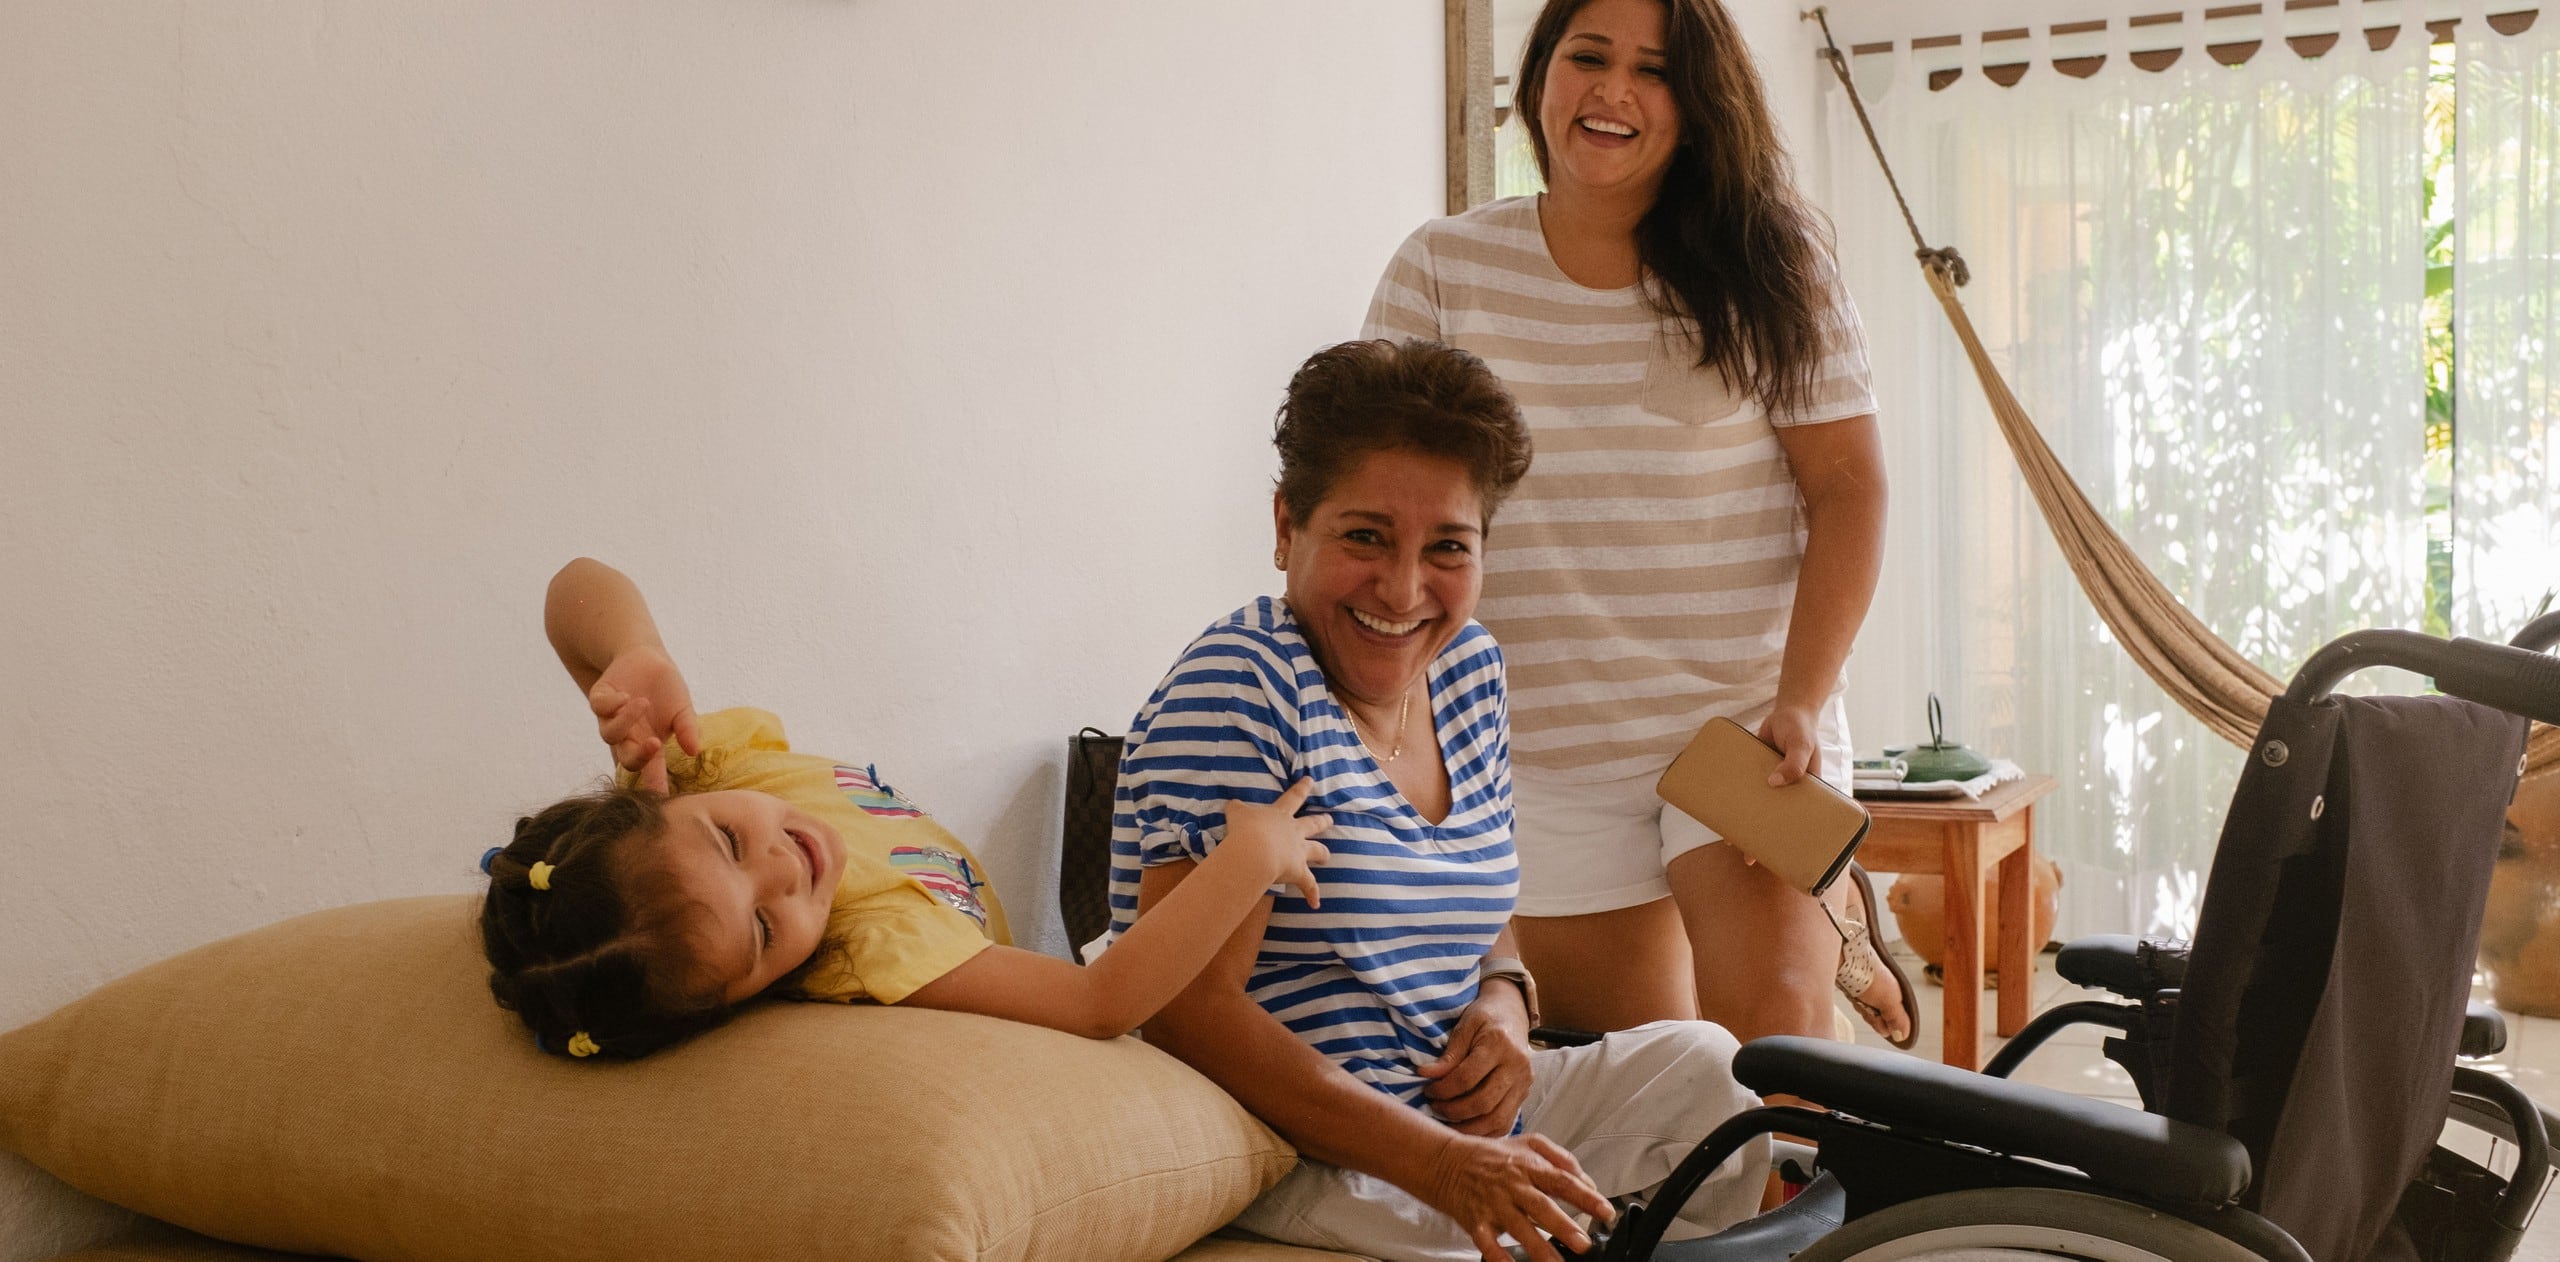 Τρεις γενιές μιας οικογένειας χαμογελούν και γελούν σε ένα προσβάσιμο κατάλυμα στην Airbnb. Μπροστά από το γηραιότερο μέλος της οικογένειας βρίσκεται ένα αναπηρικό αμαξίδιο.